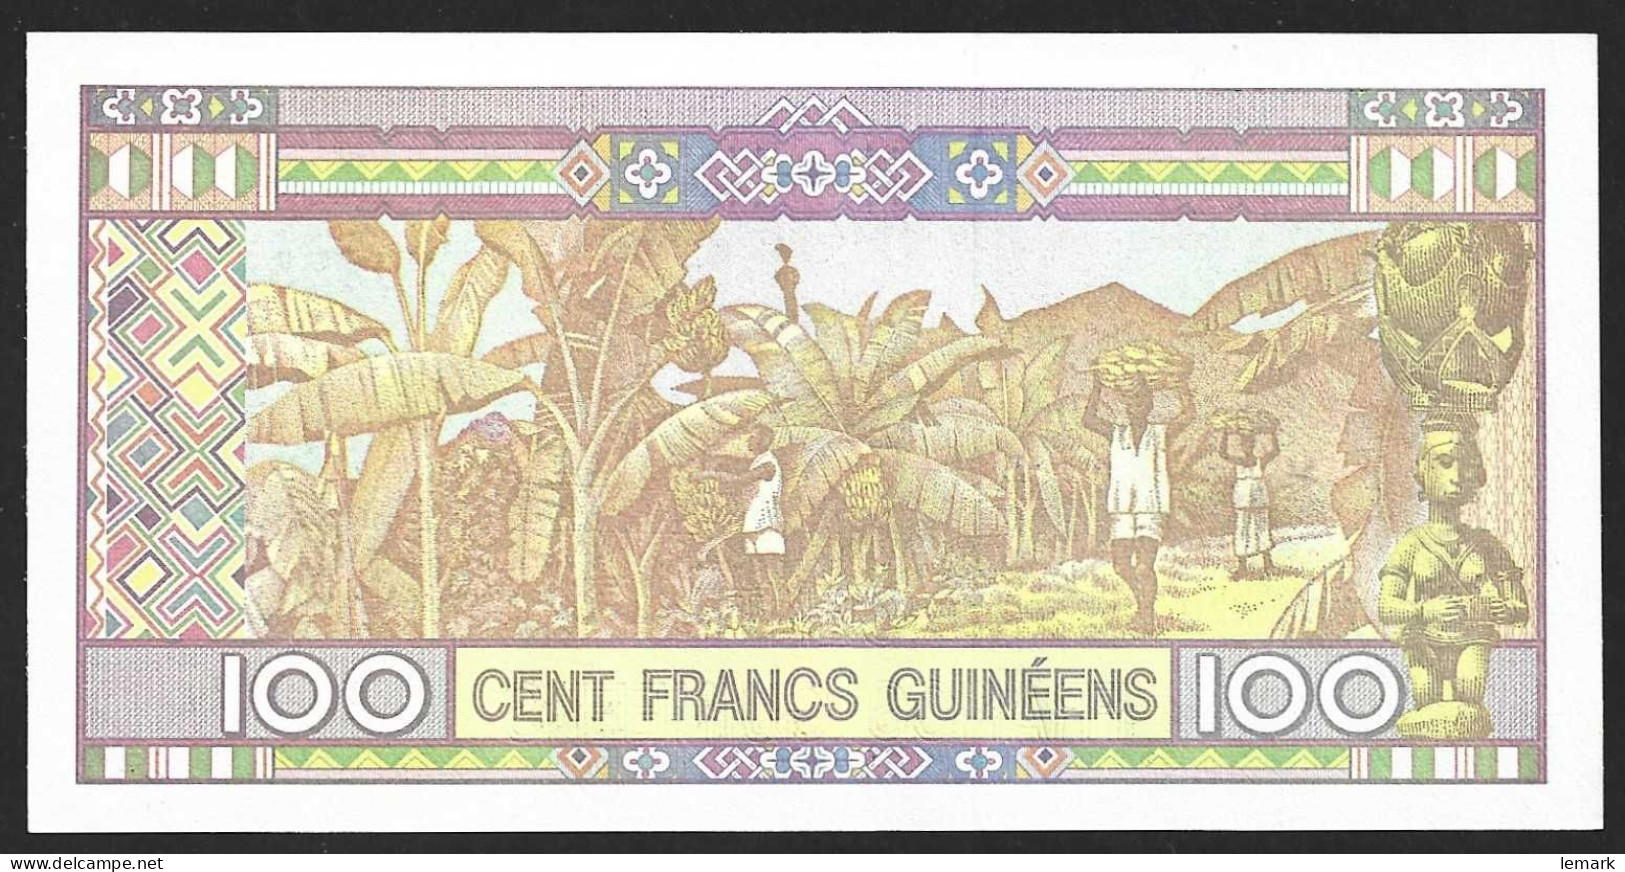 Guinea 100 Francs 2015 P47 UNC - Guinea